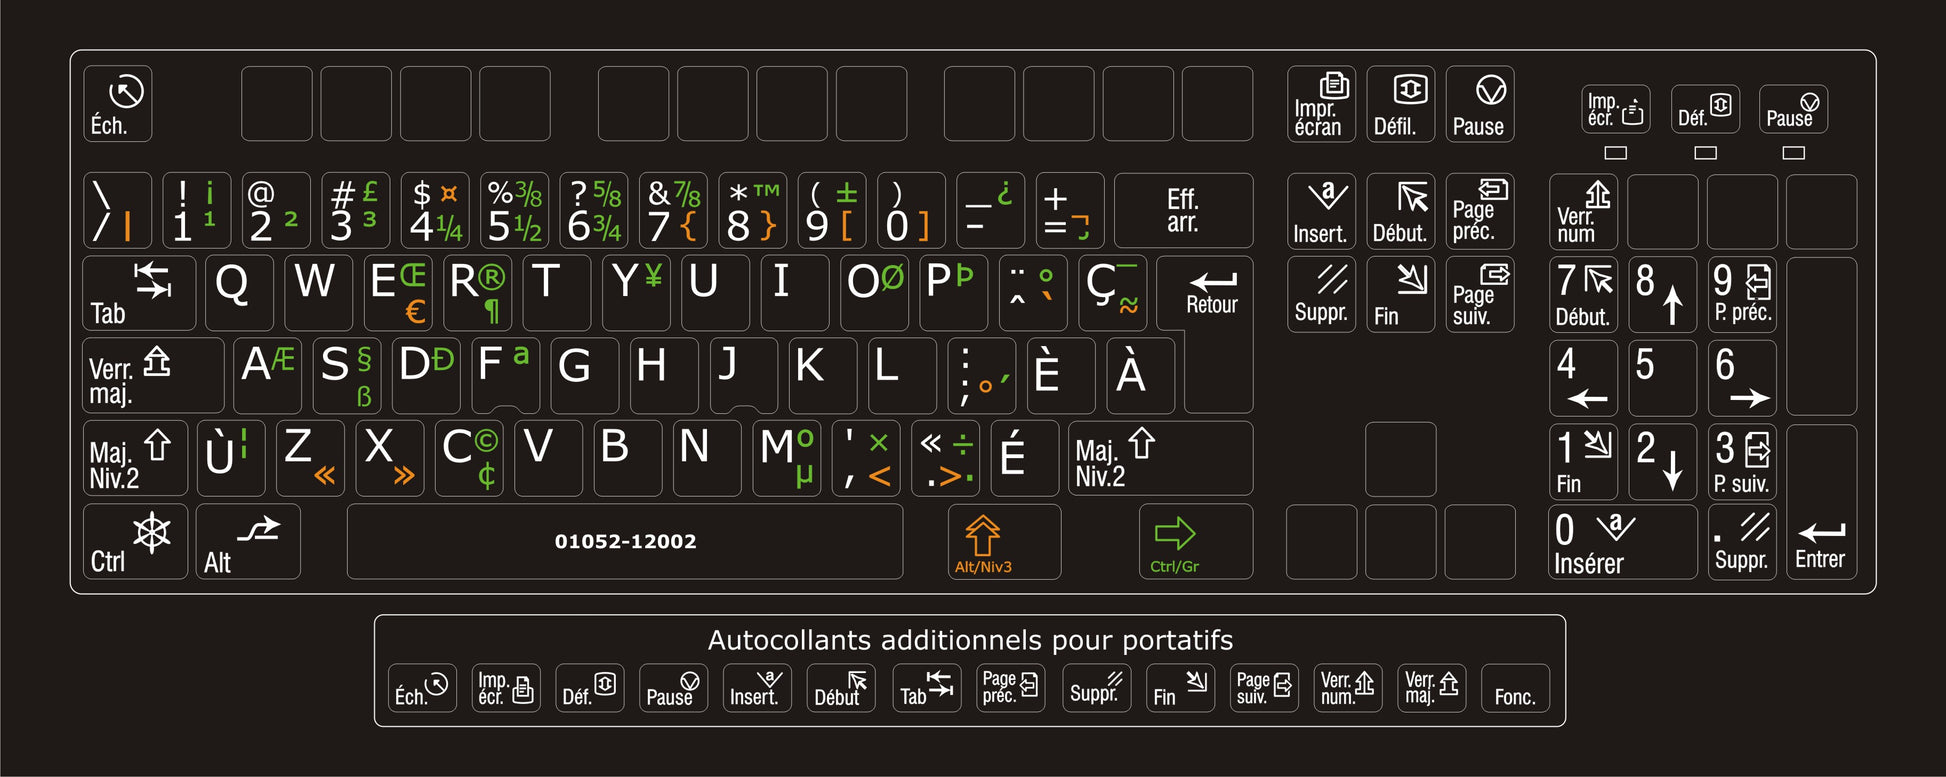 Autocollants clavier Windows Can multilingue + fct FR 01052-12002